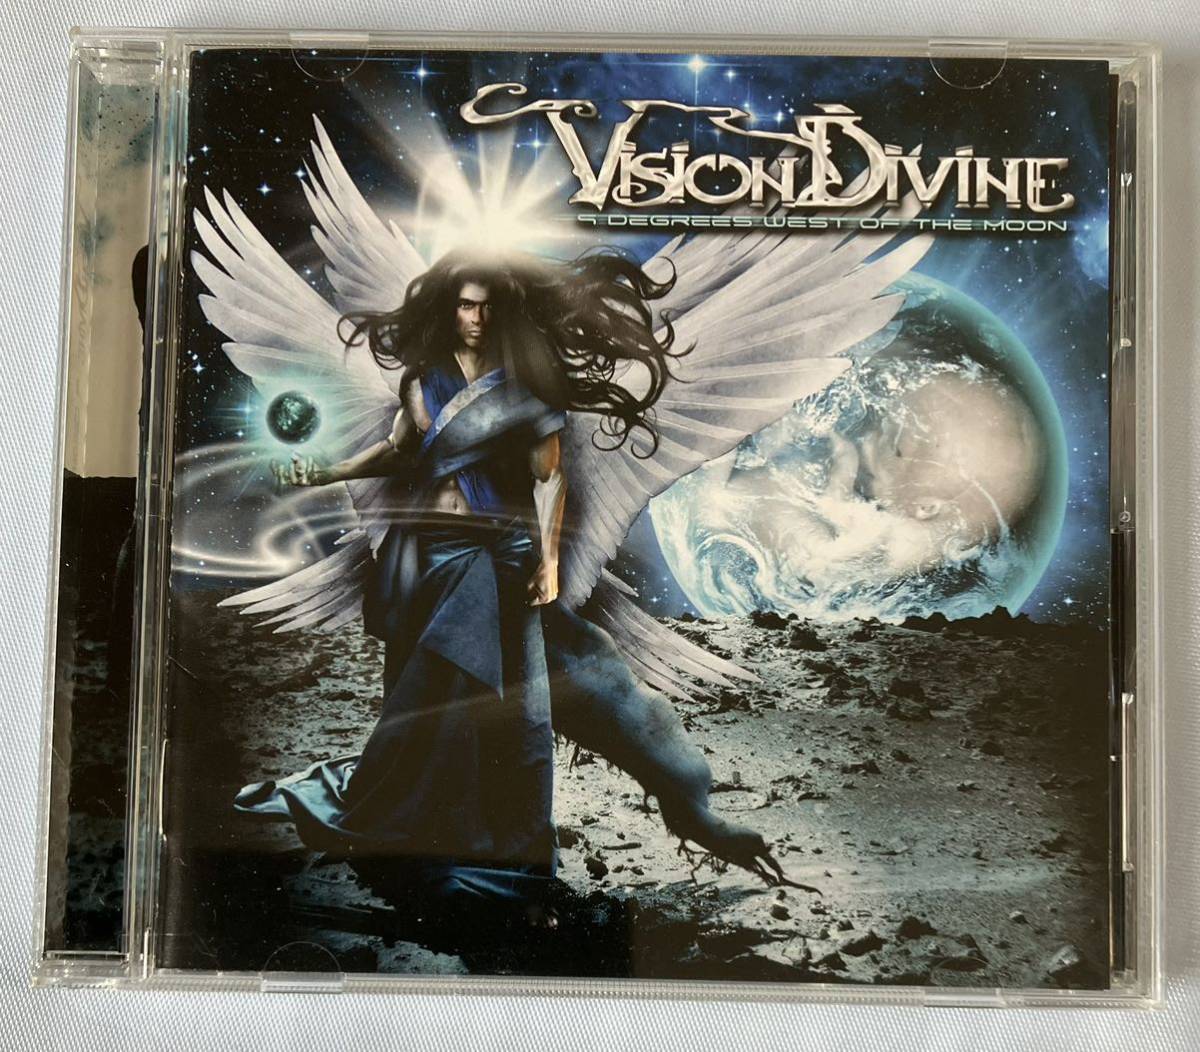 ヴィジョン・ディヴァイン, Vision Devine「9 Degrees West Of The Moon」帯付き日本盤CD, HEAVY METAL, ヘヴィ・メタル_画像3